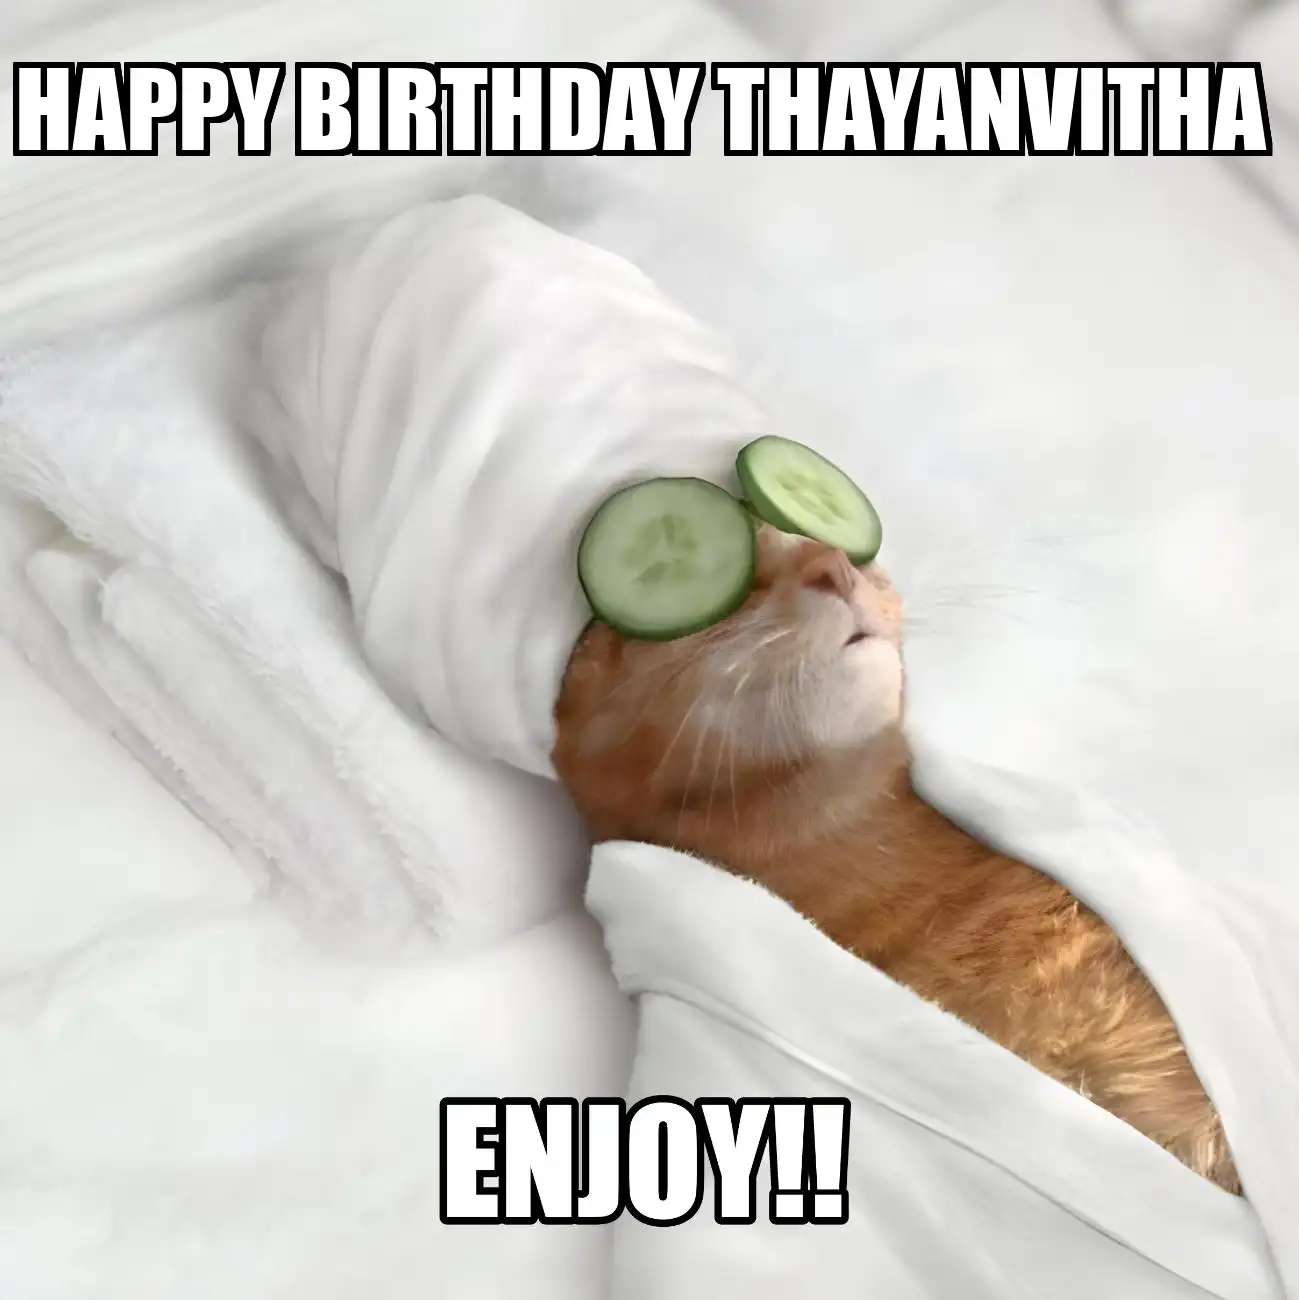 Happy Birthday Thayanvitha Enjoy Cat Meme